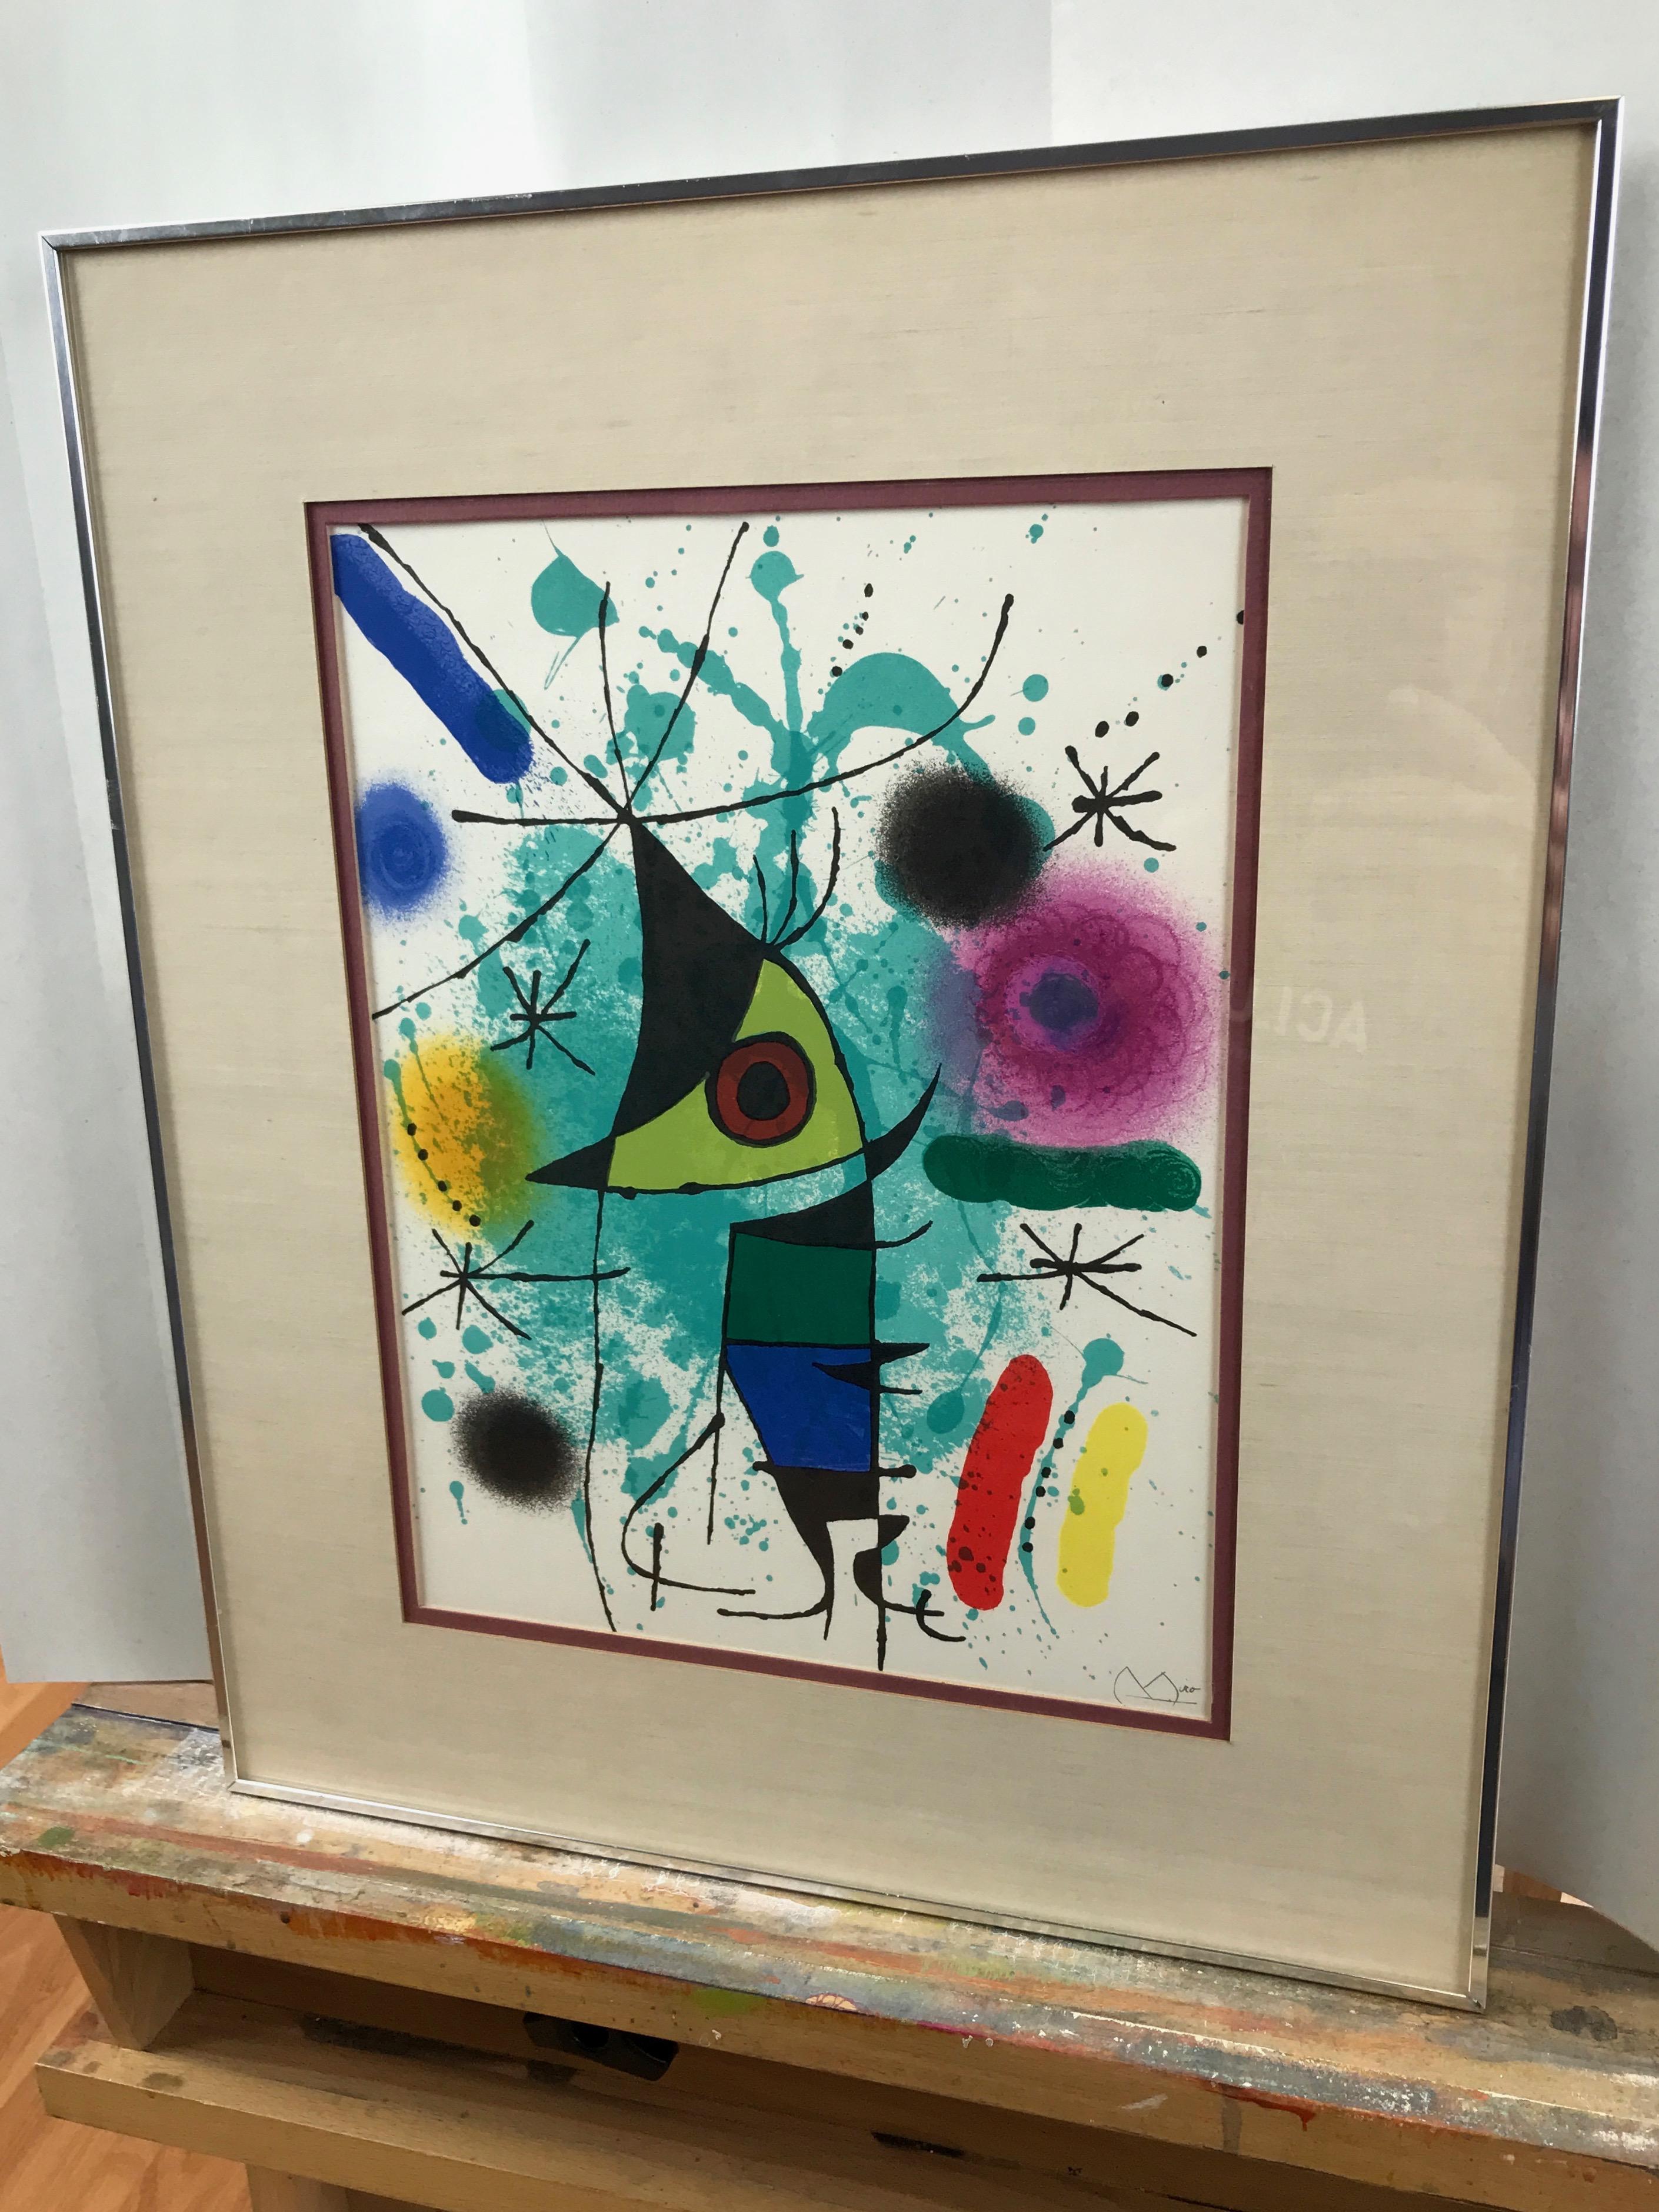 Fin du 20e siècle Joan Miró 